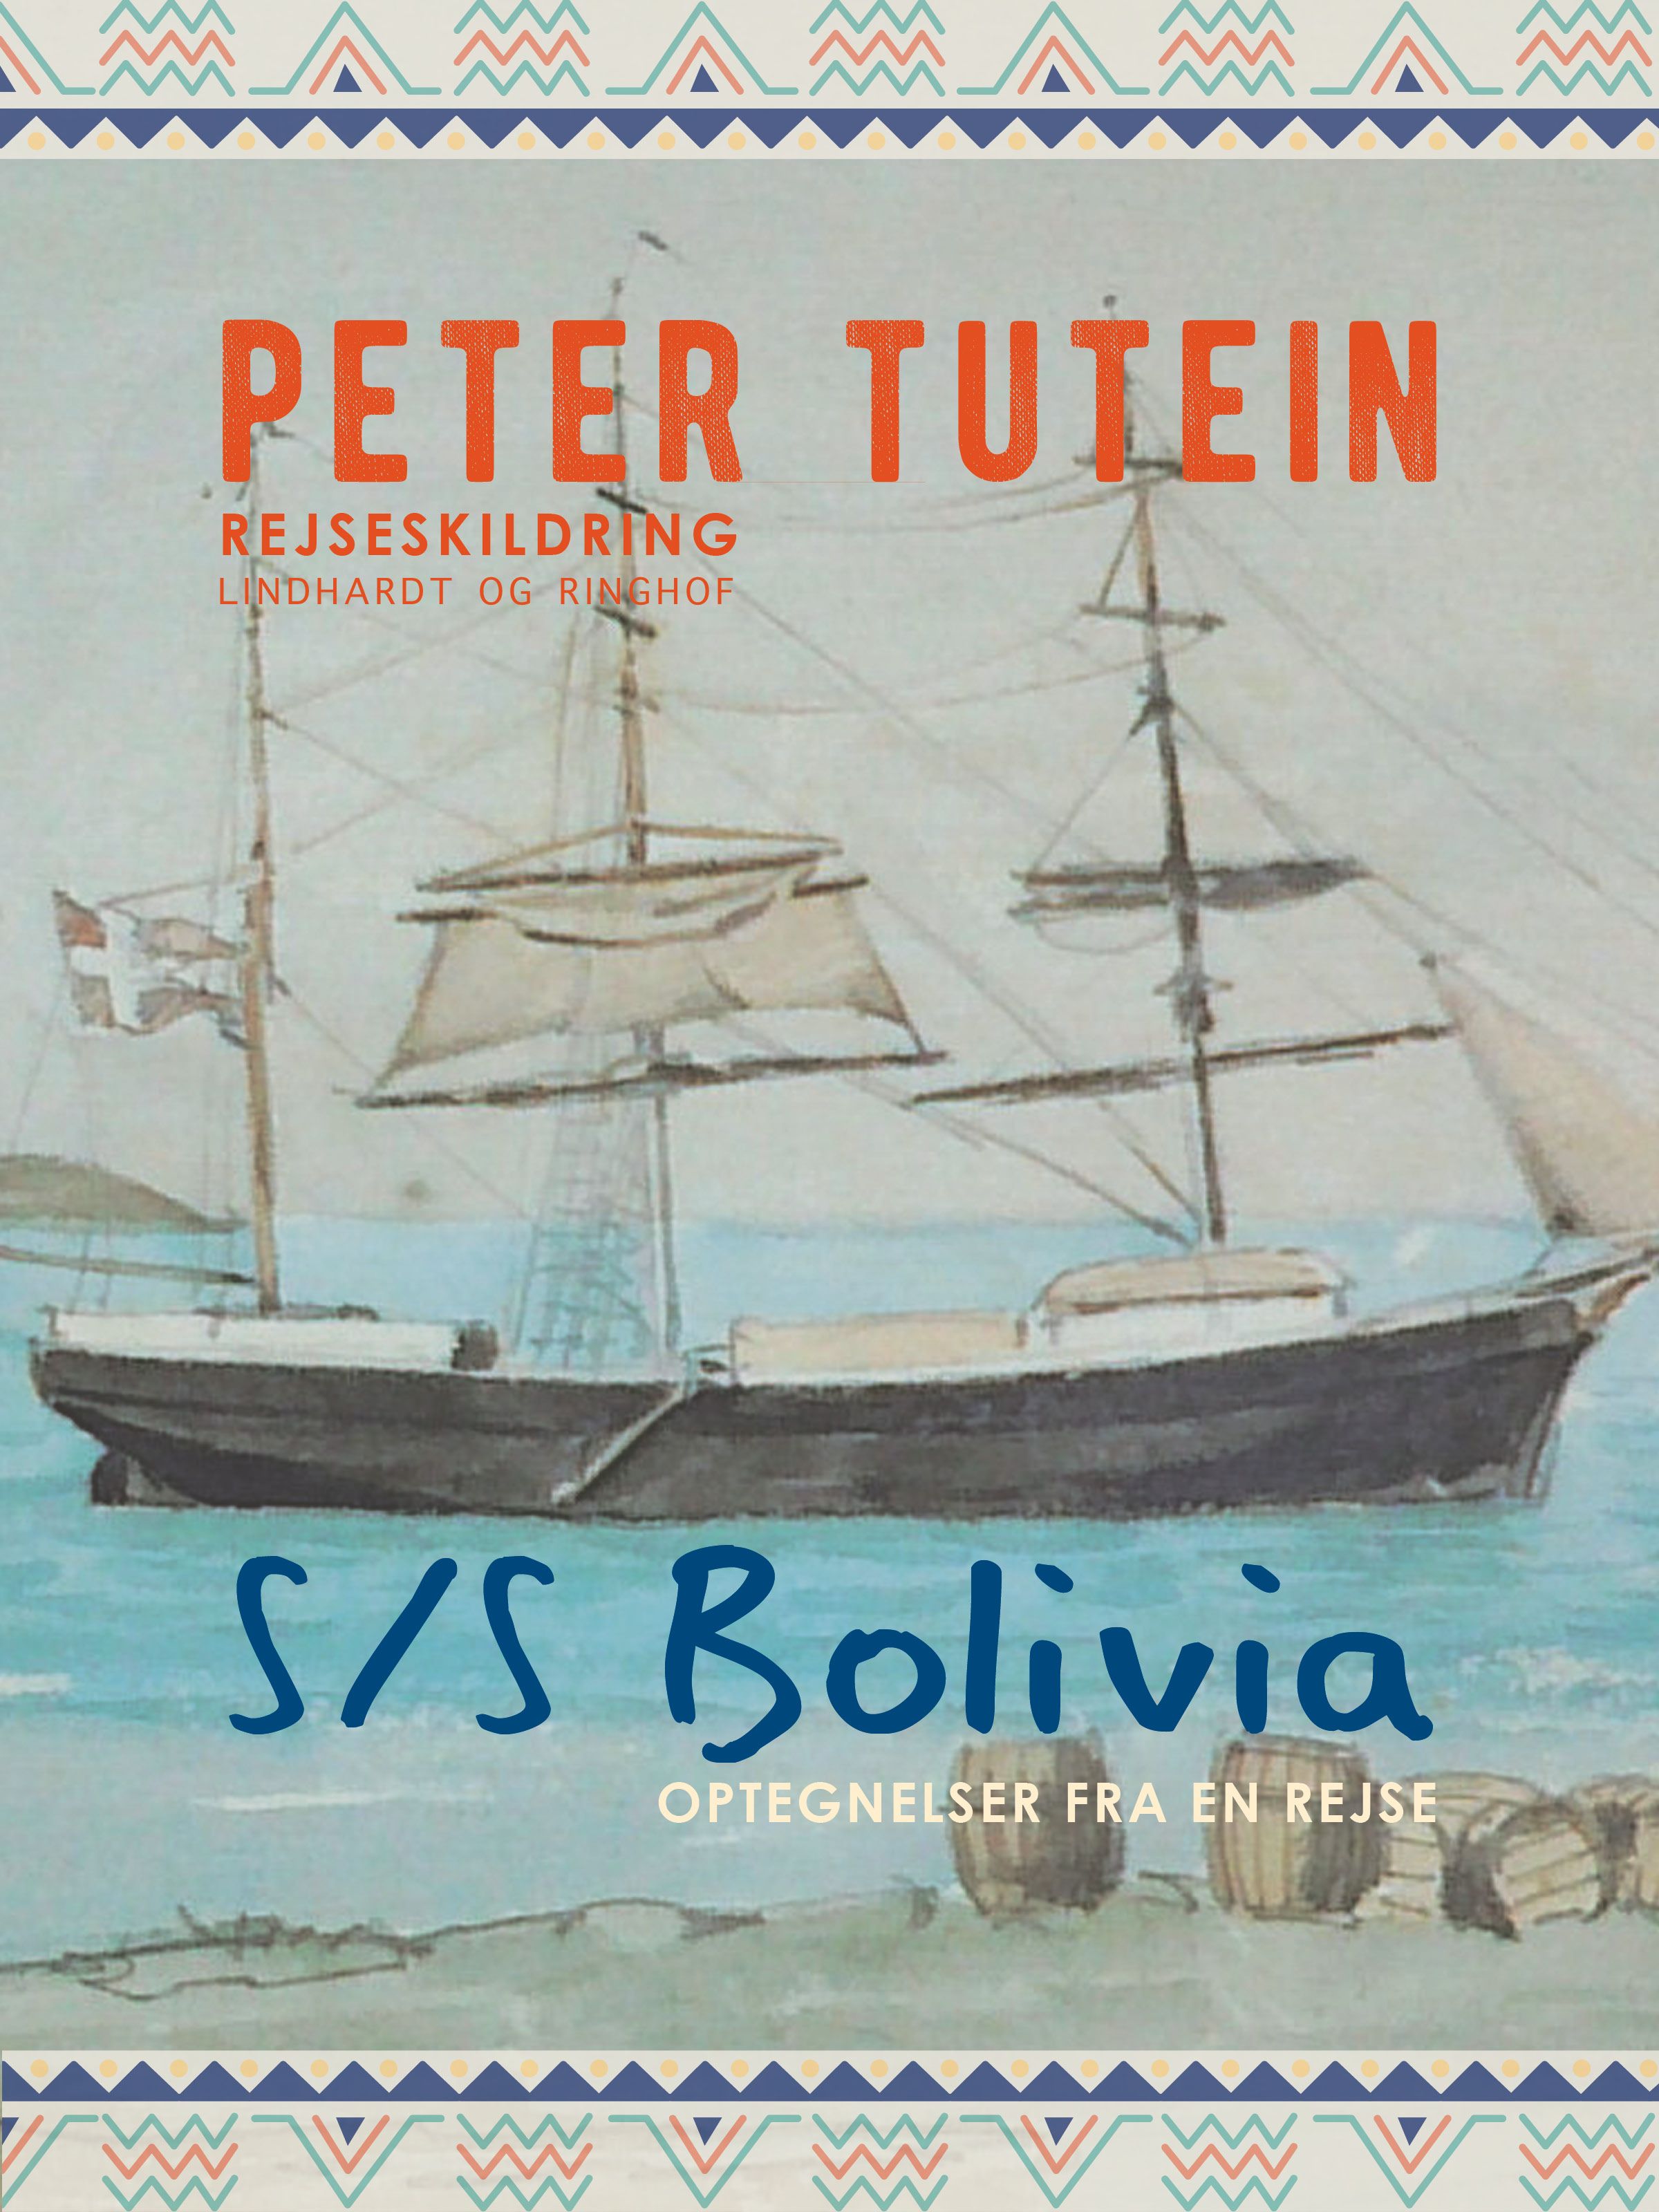 S/S Bolivia: Optegnelser fra en rejse, e-bok av Peter Tutein